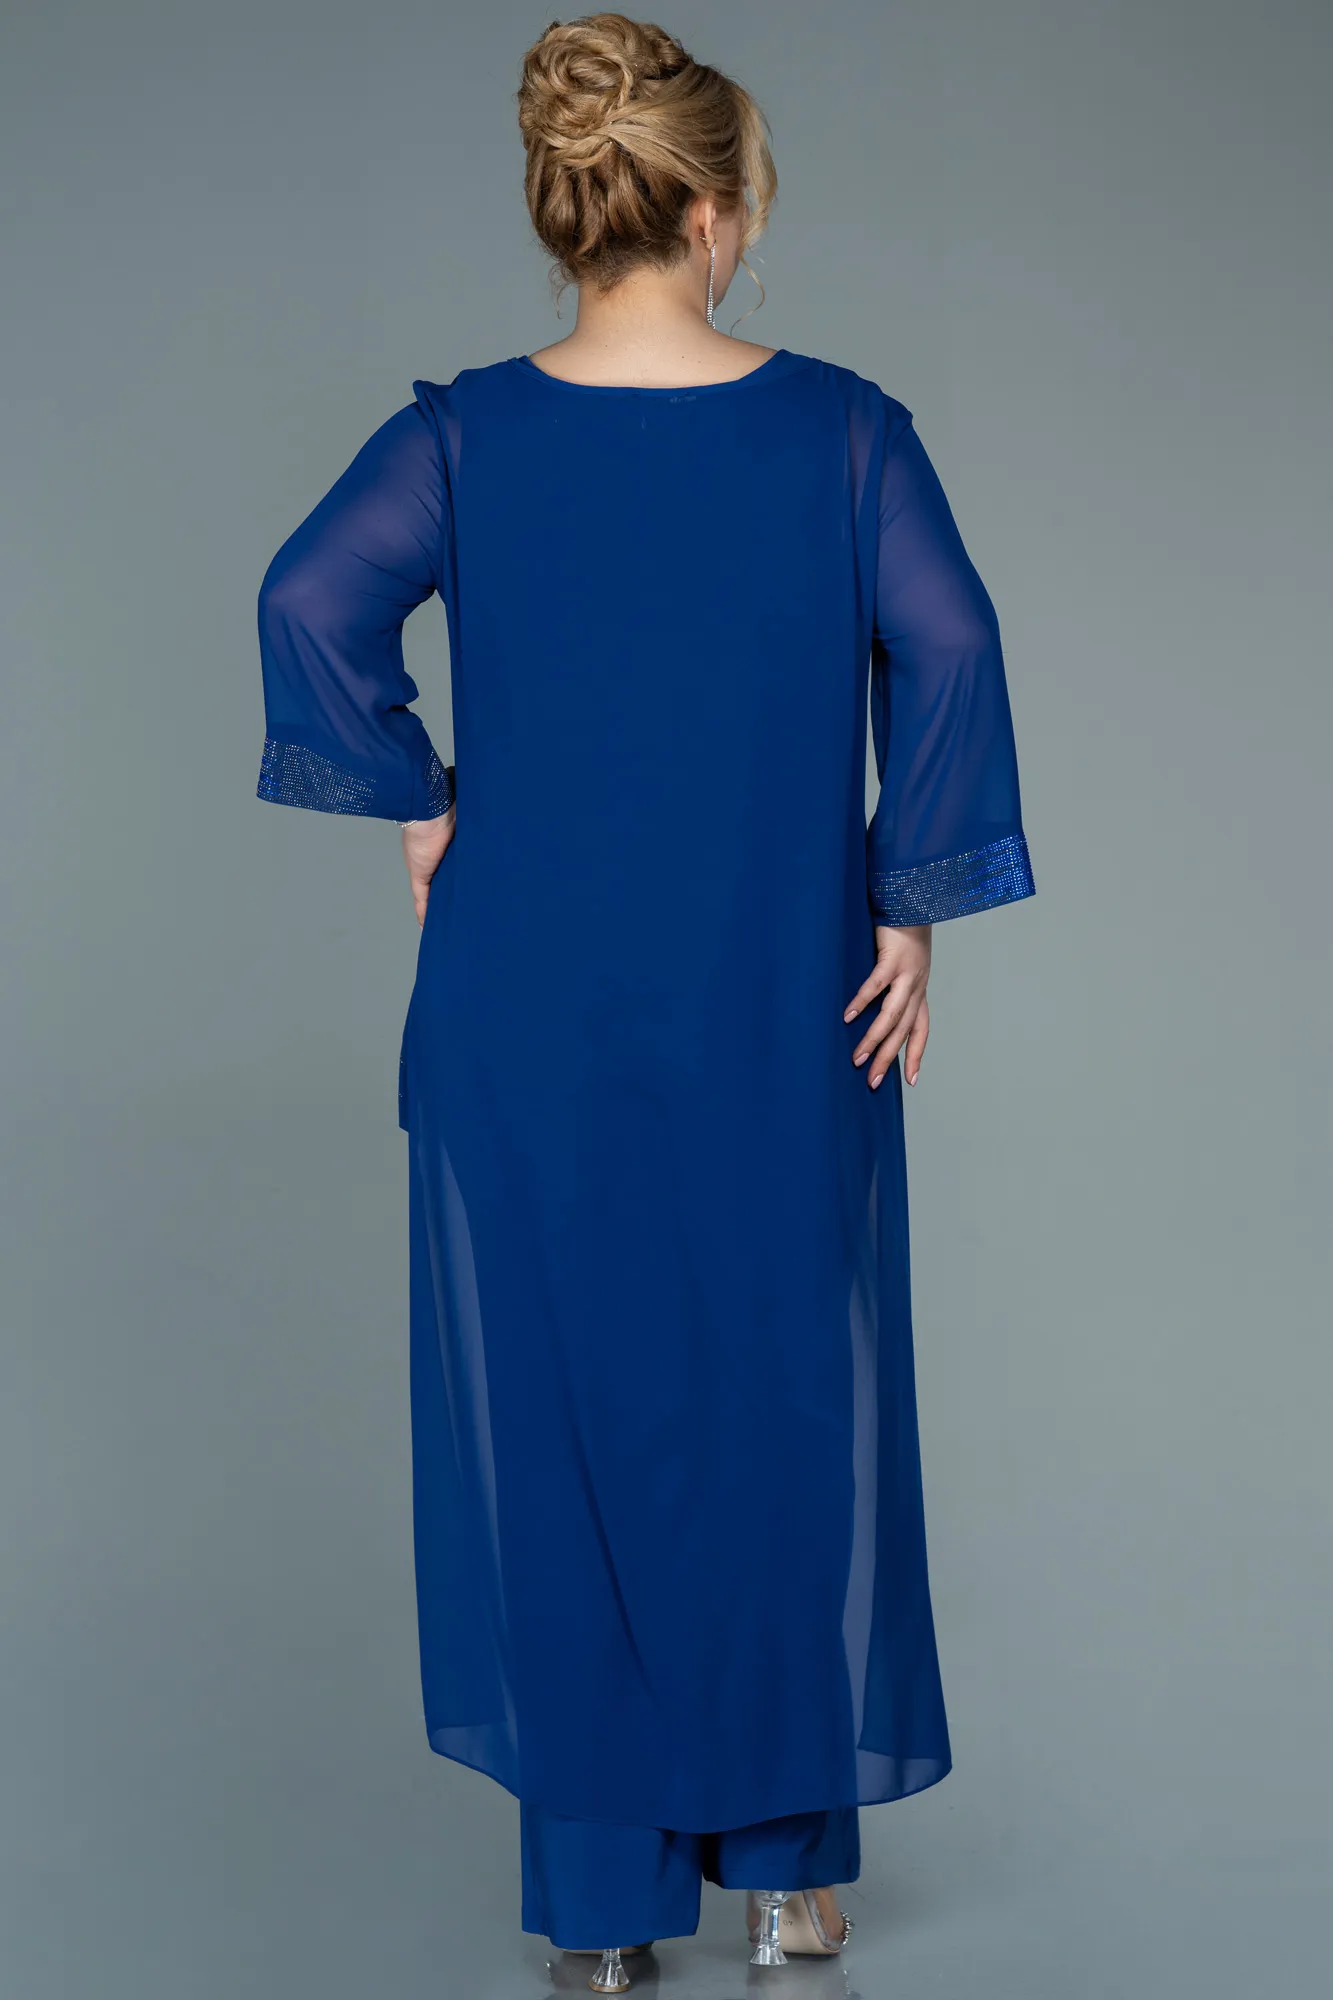 Sax Blue-Long Chiffon Evening Dress ABT083